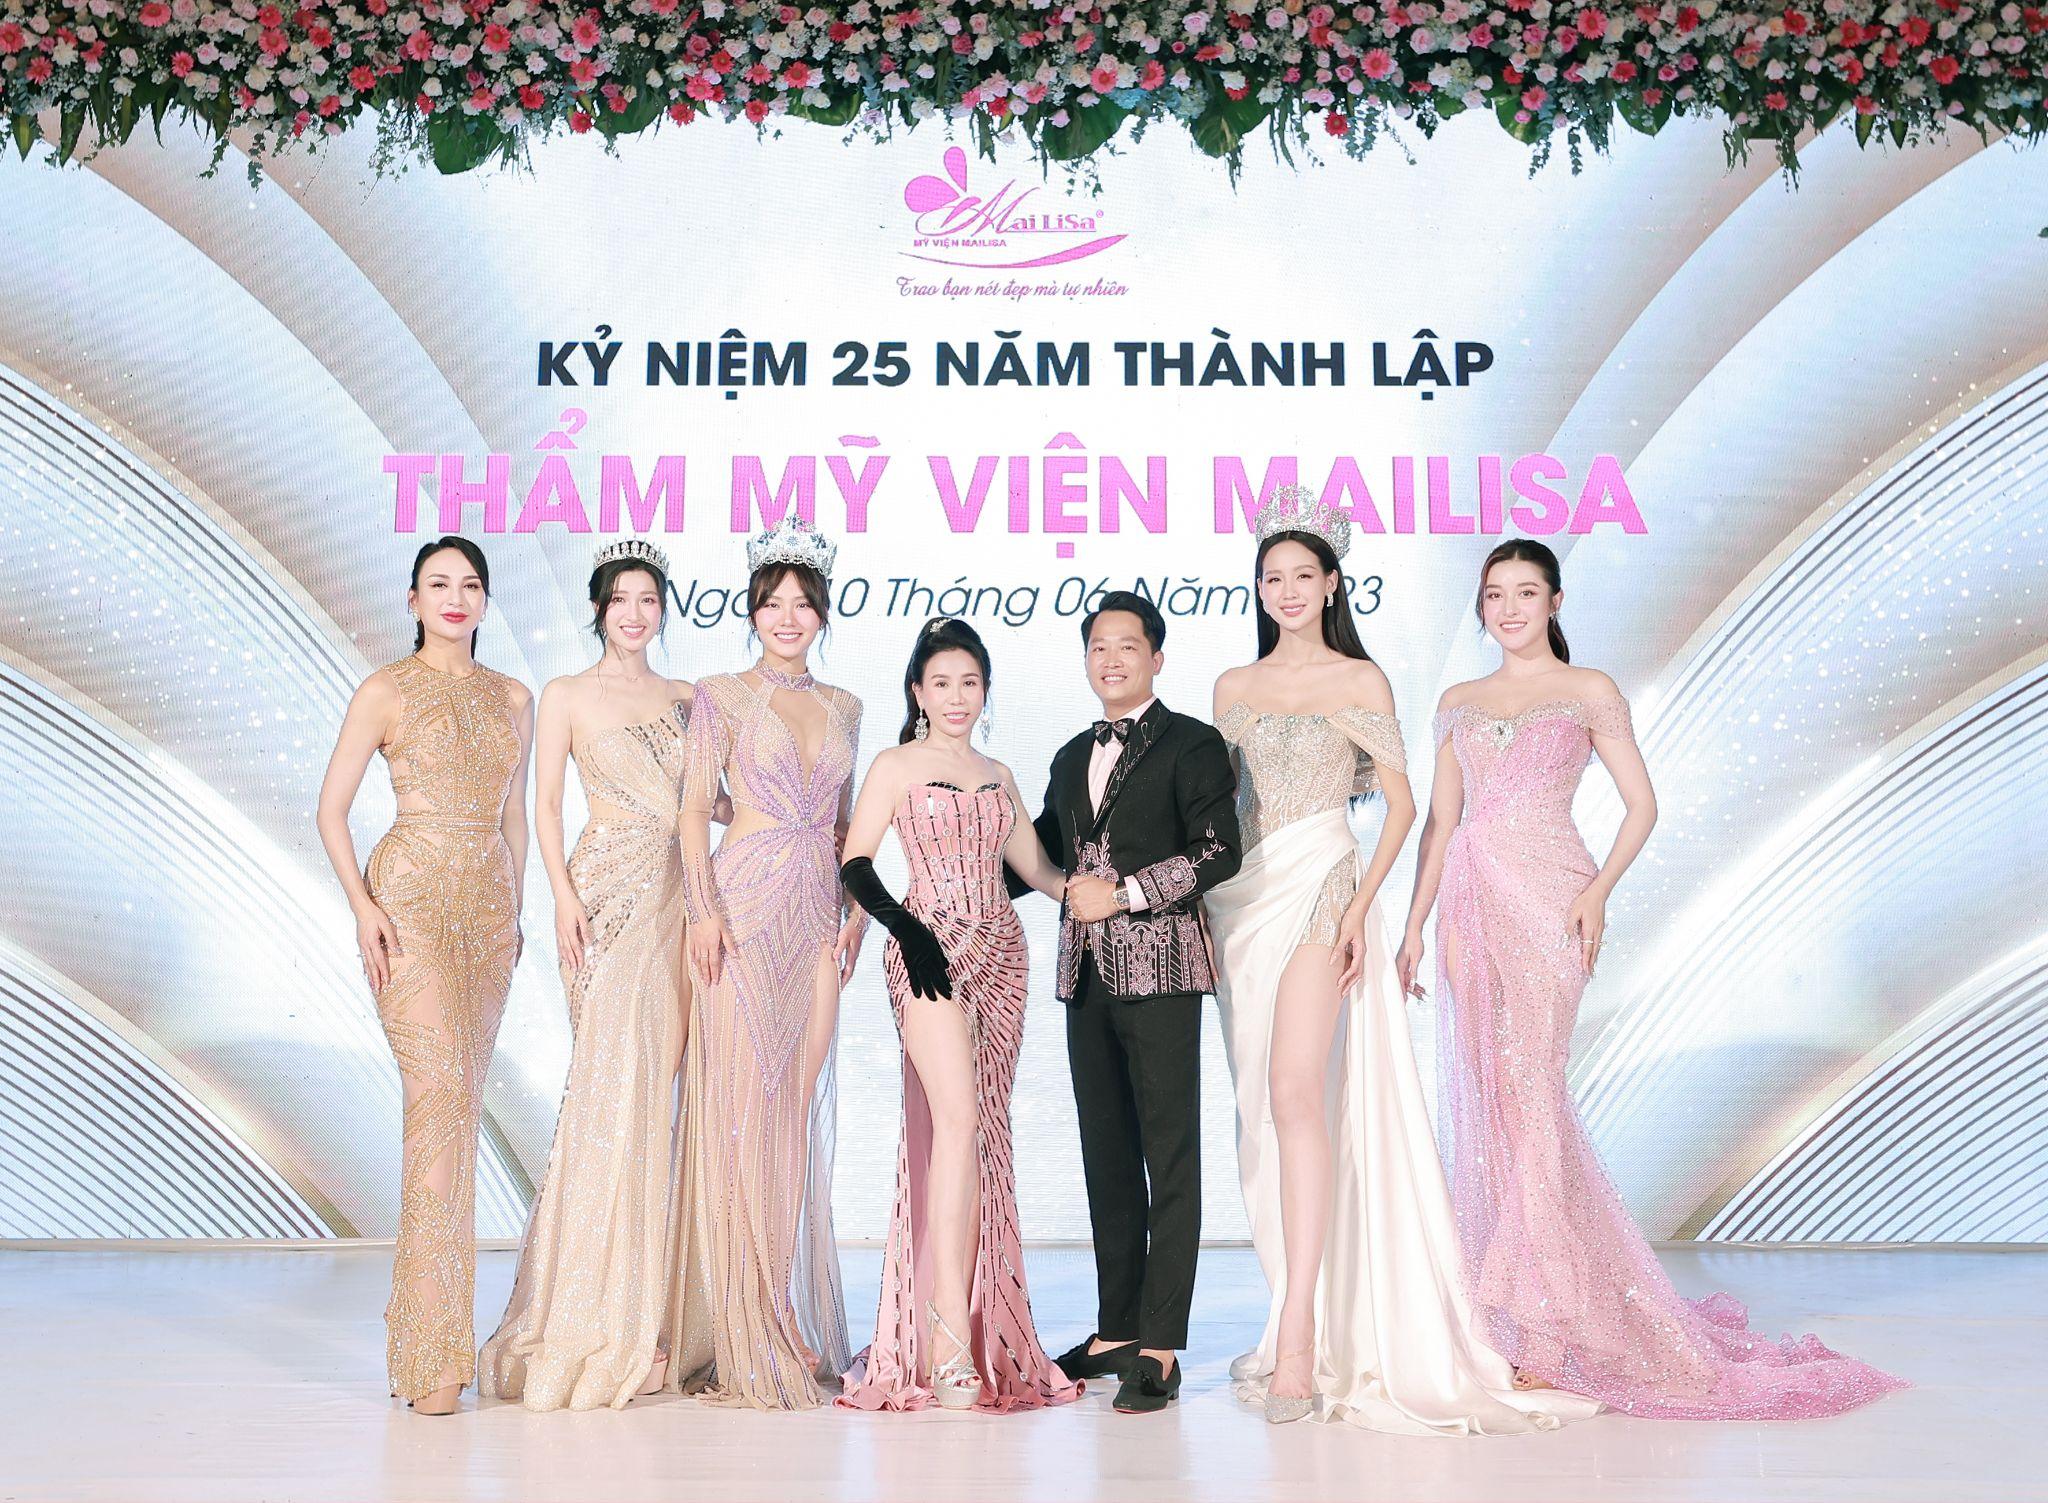 Thẩm mỹ viện Mailisa từ lâu đã trở thành địa chỉ làm đẹp đáng tin cậy của hàng triệu khách hàng và các sao Việt nổi tiếng